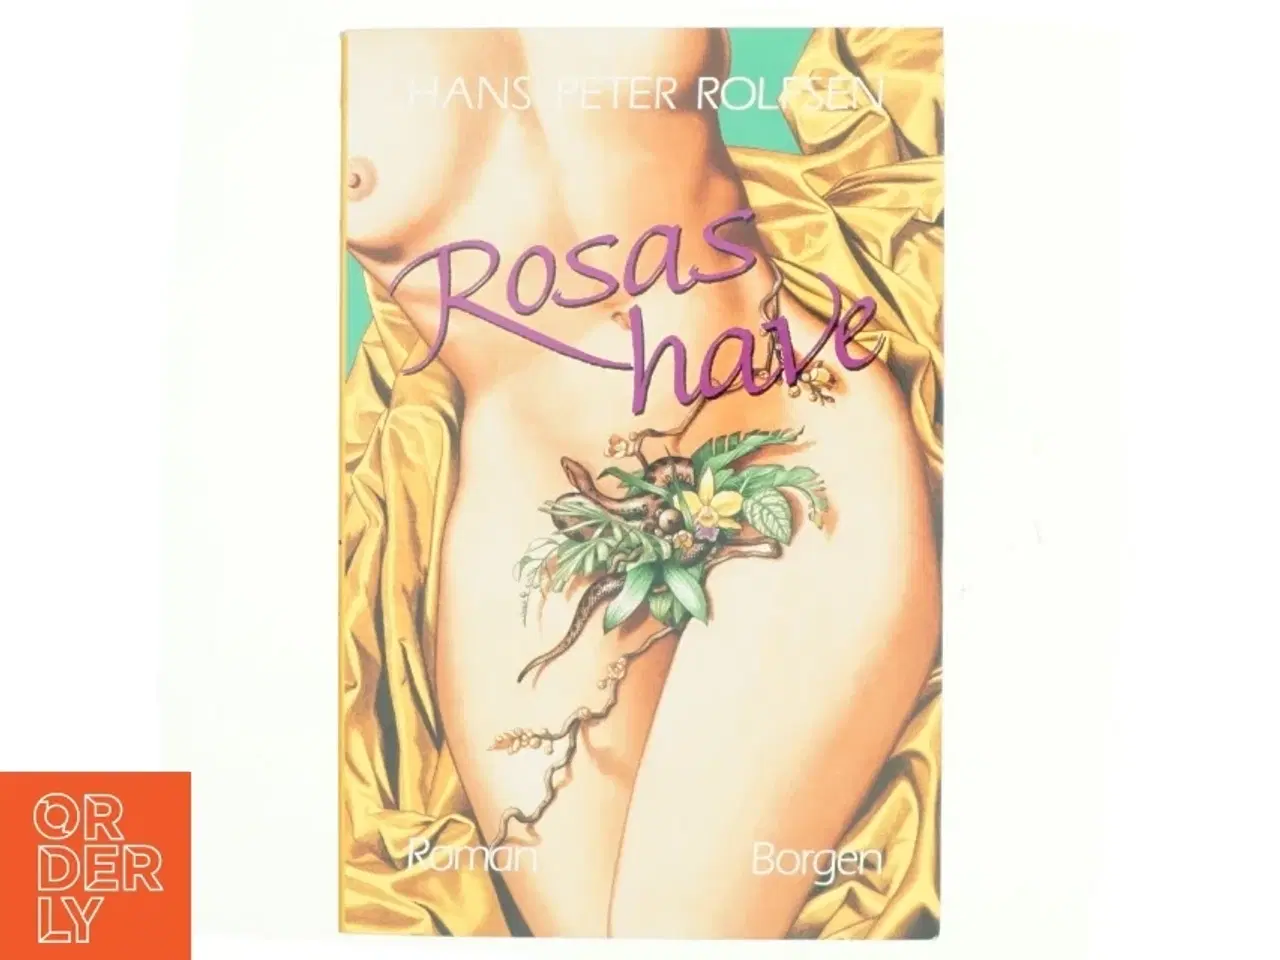 Billede 1 - Rosas have af Hans Peter Rolfsen (bog)